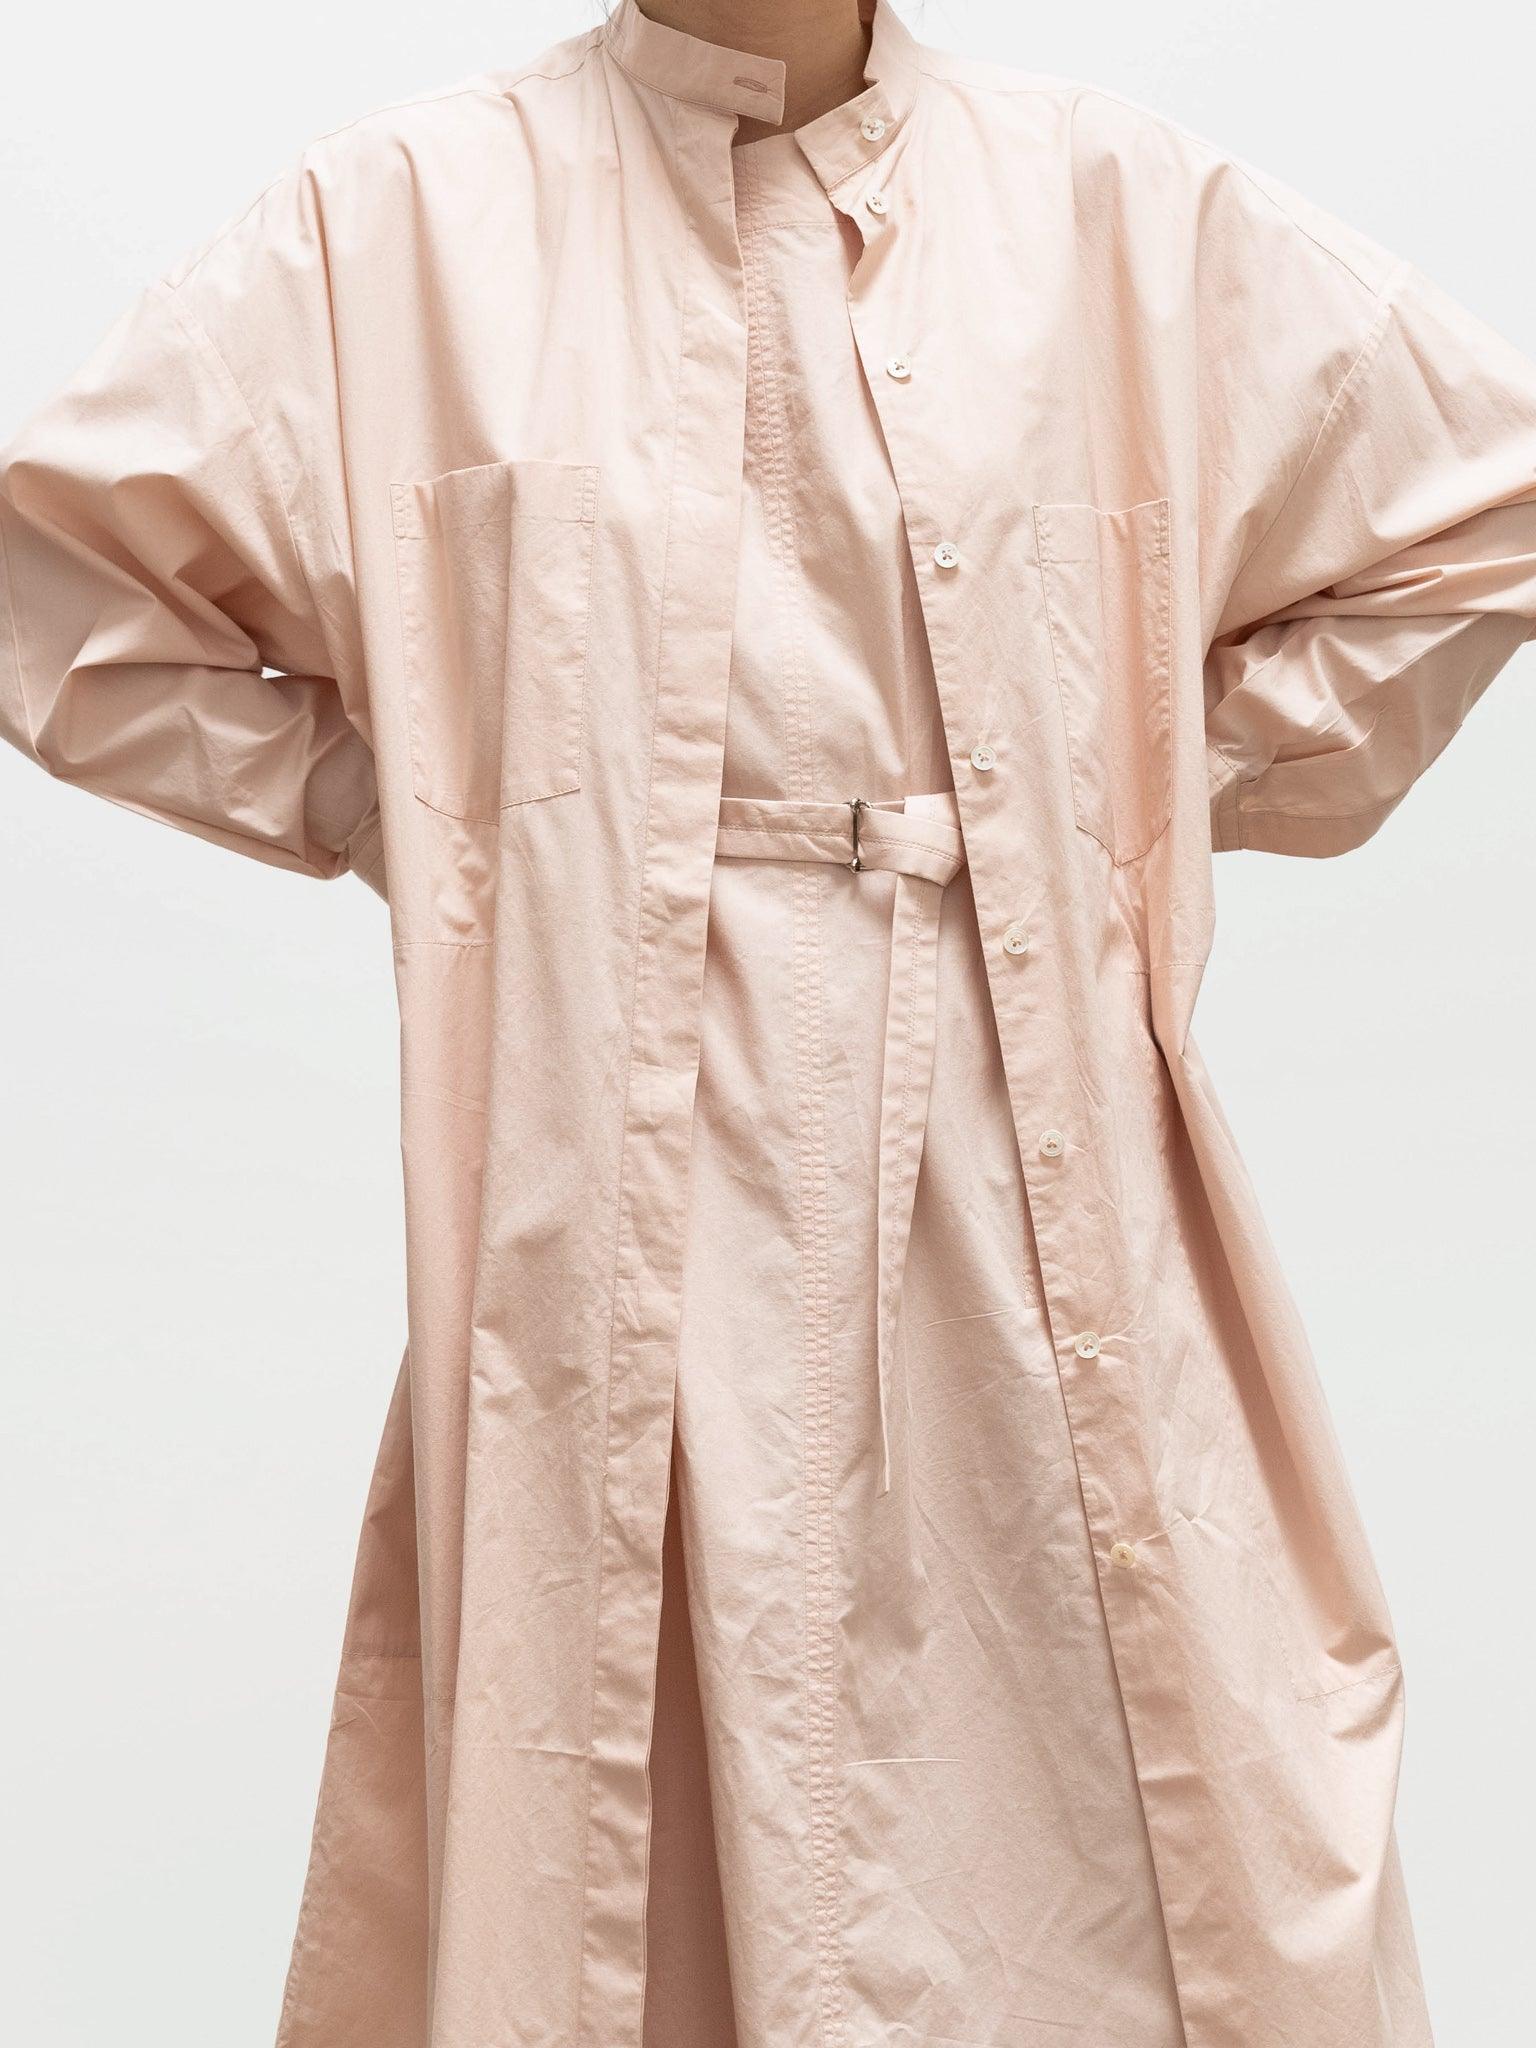 Namu Shop - Jan Machenhauer Lou Dress - Blush Cotton Poplin